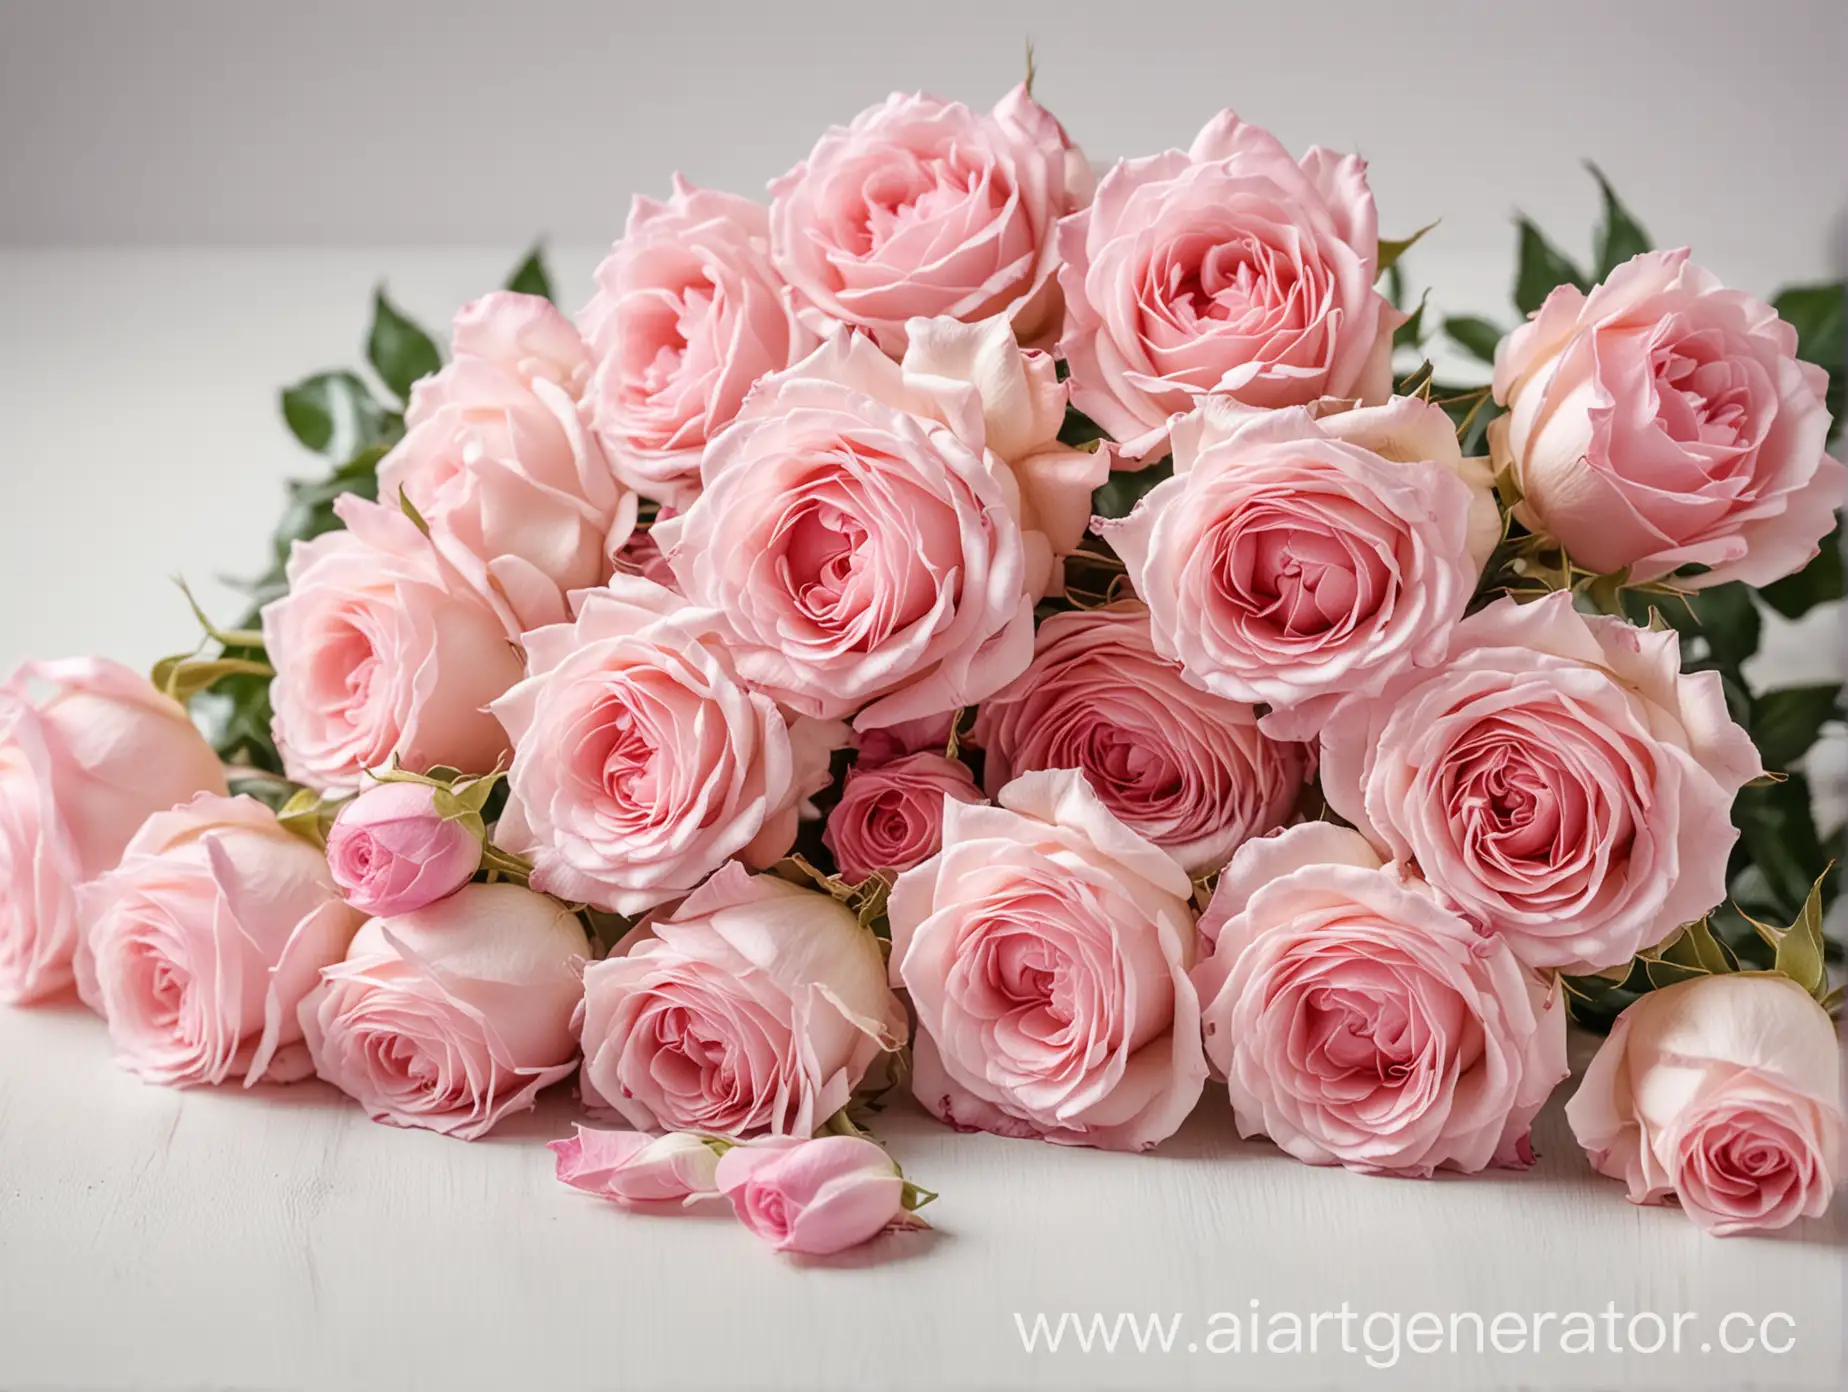 много нежно розовых роз на столе крупным планом справа, а слева размытый белый фон,  фото нежное